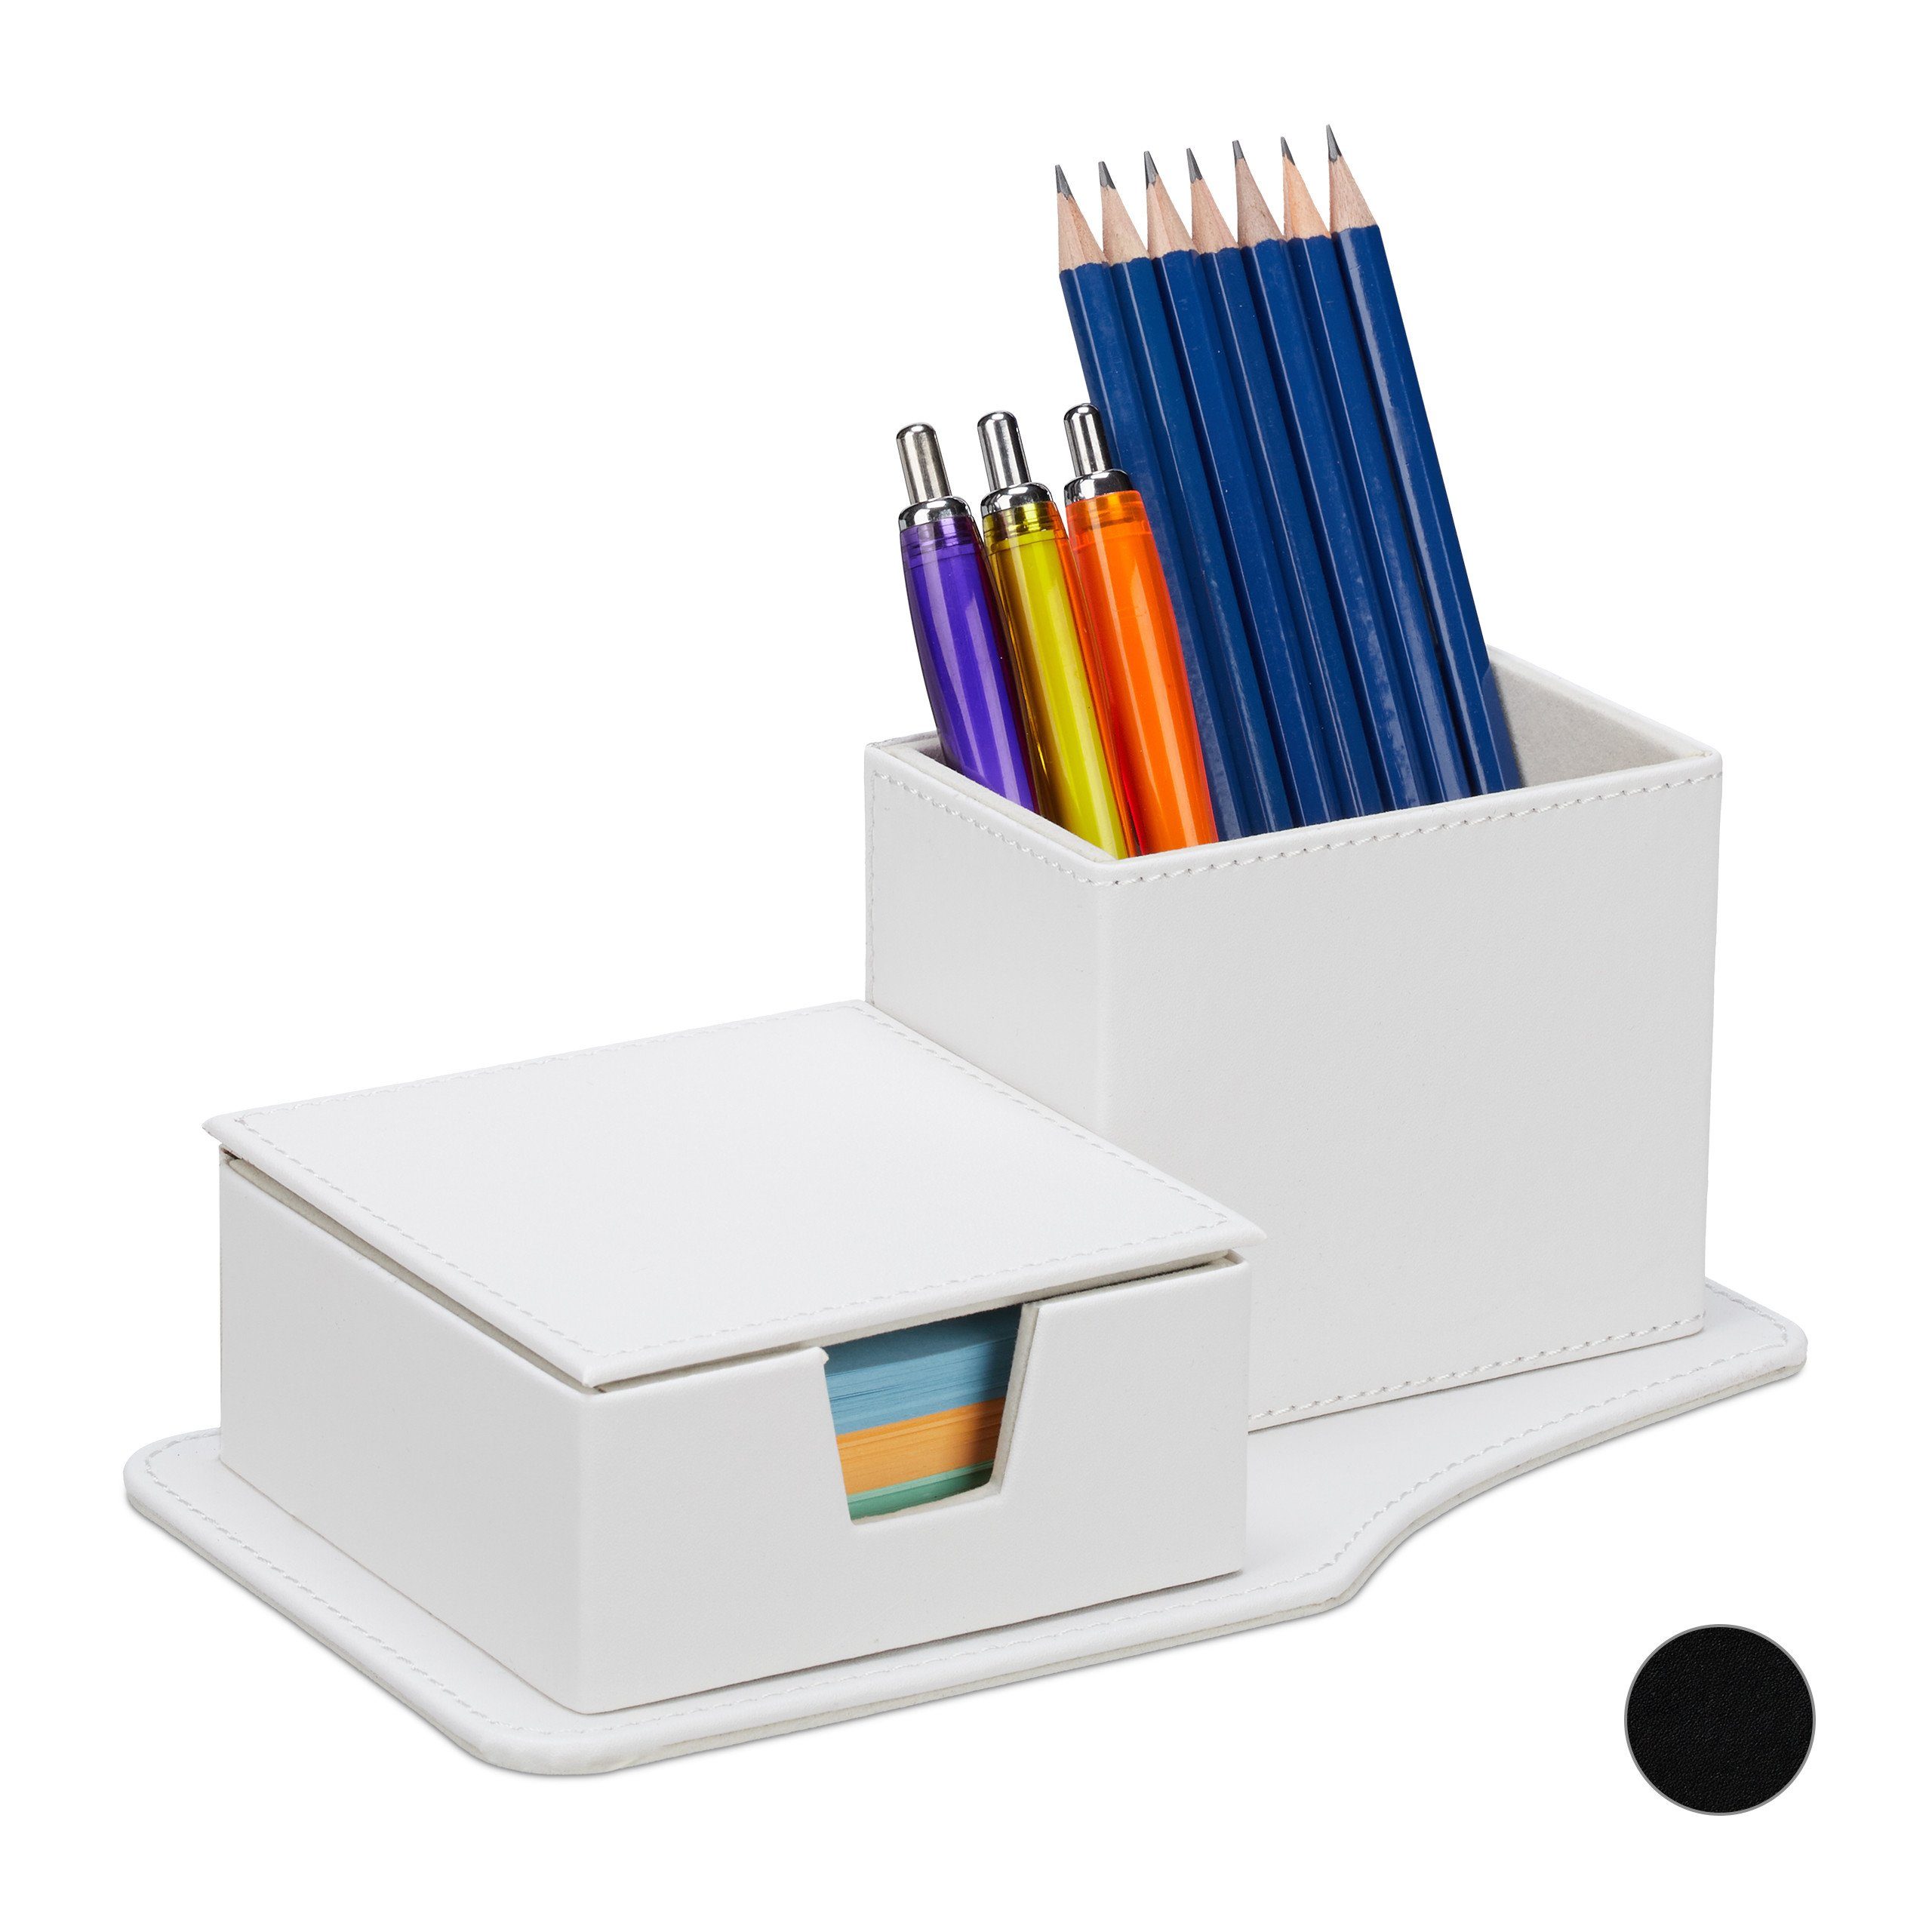 relaxdays Schreibtischaufsatz Schreibtisch Organizer aus Kunstleder, Weiß Weiß Creme